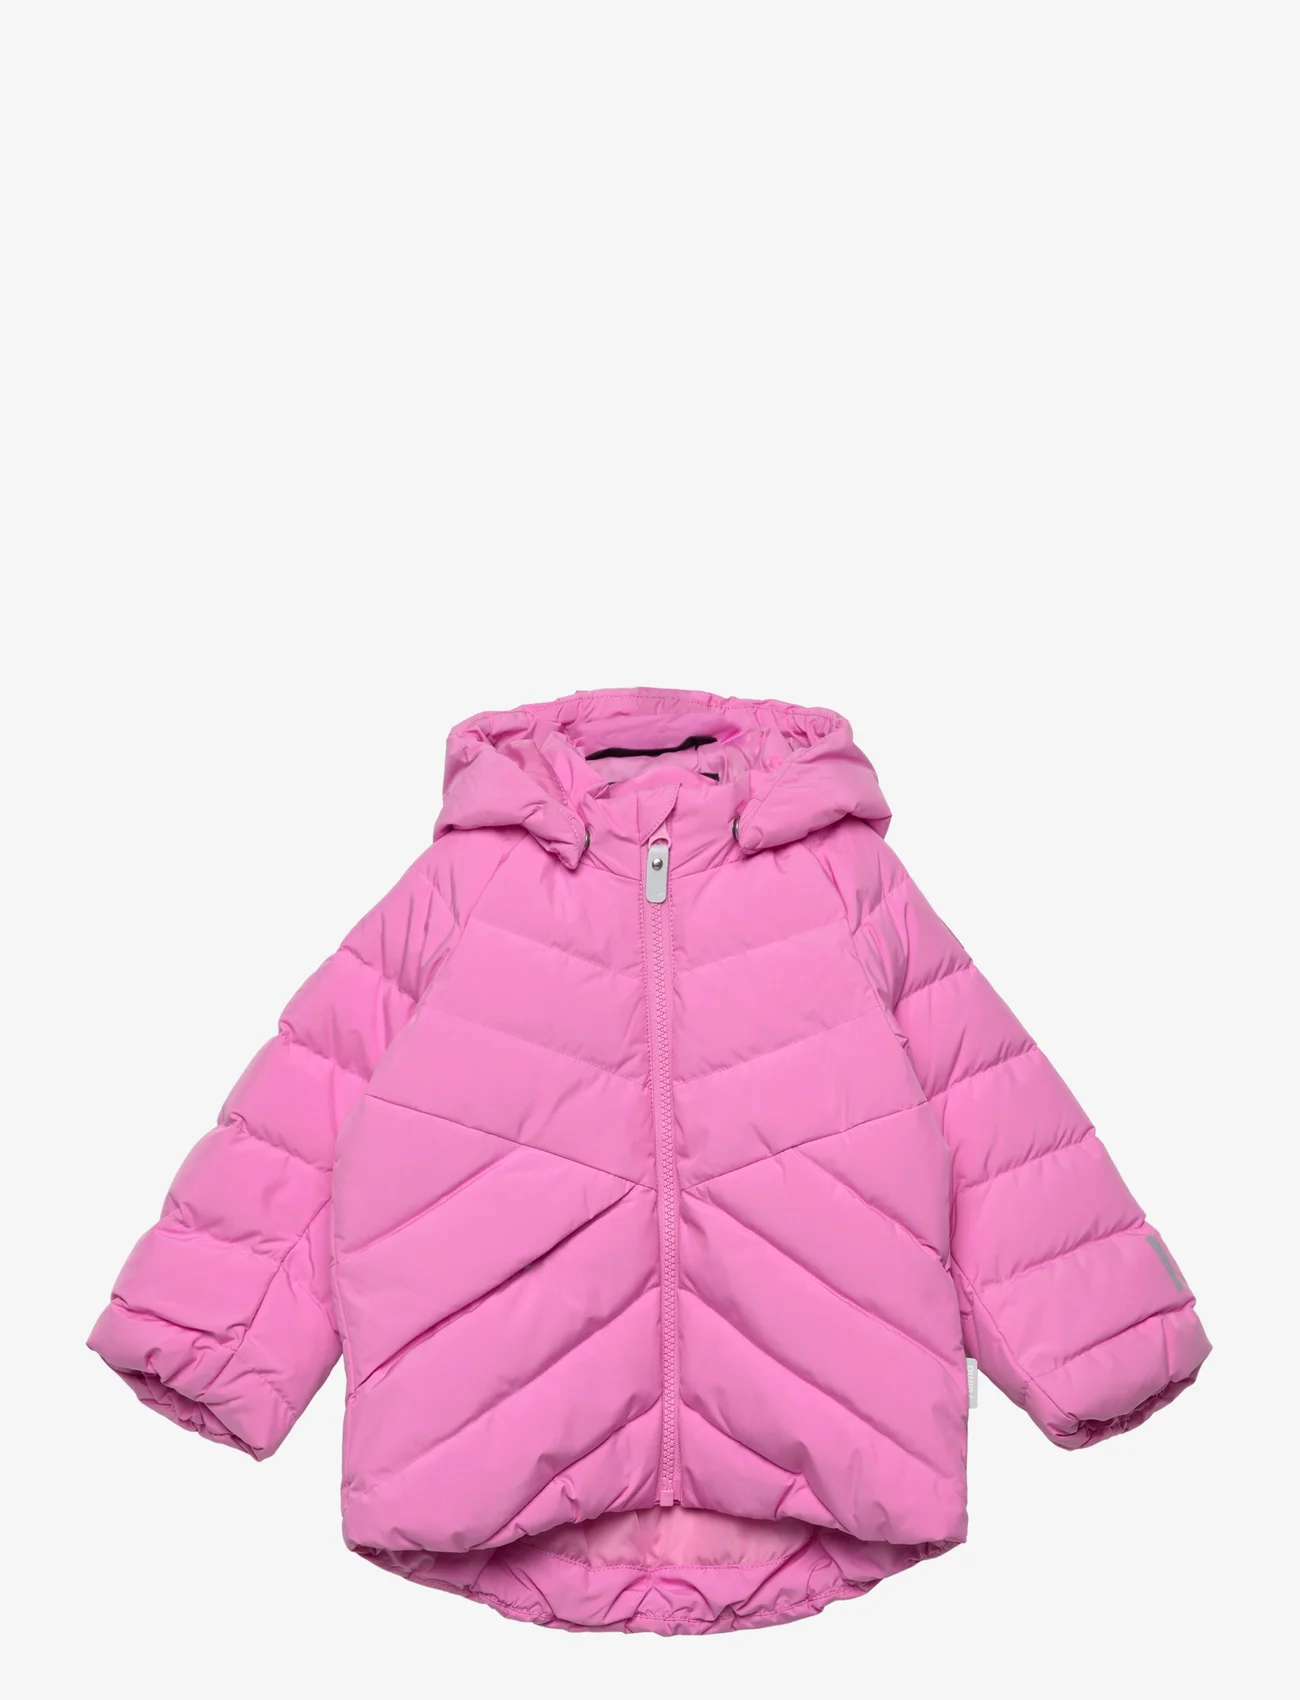 Reima - Down jacket, Kupponen - dunjakker & forede jakker - cold pink - 0